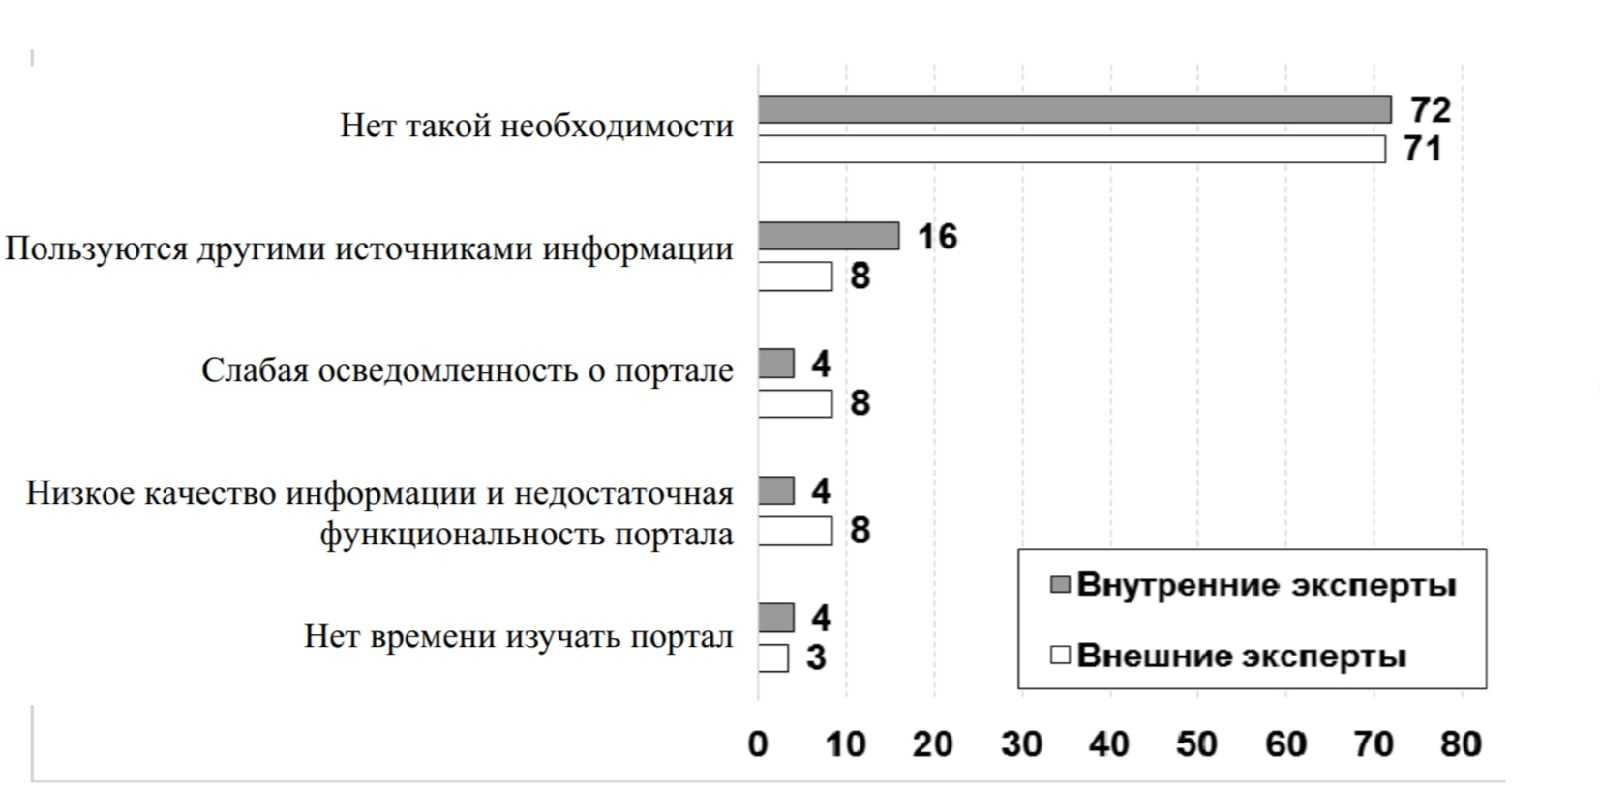 Реферат: Сравнительный анализ госслужбы в России и США